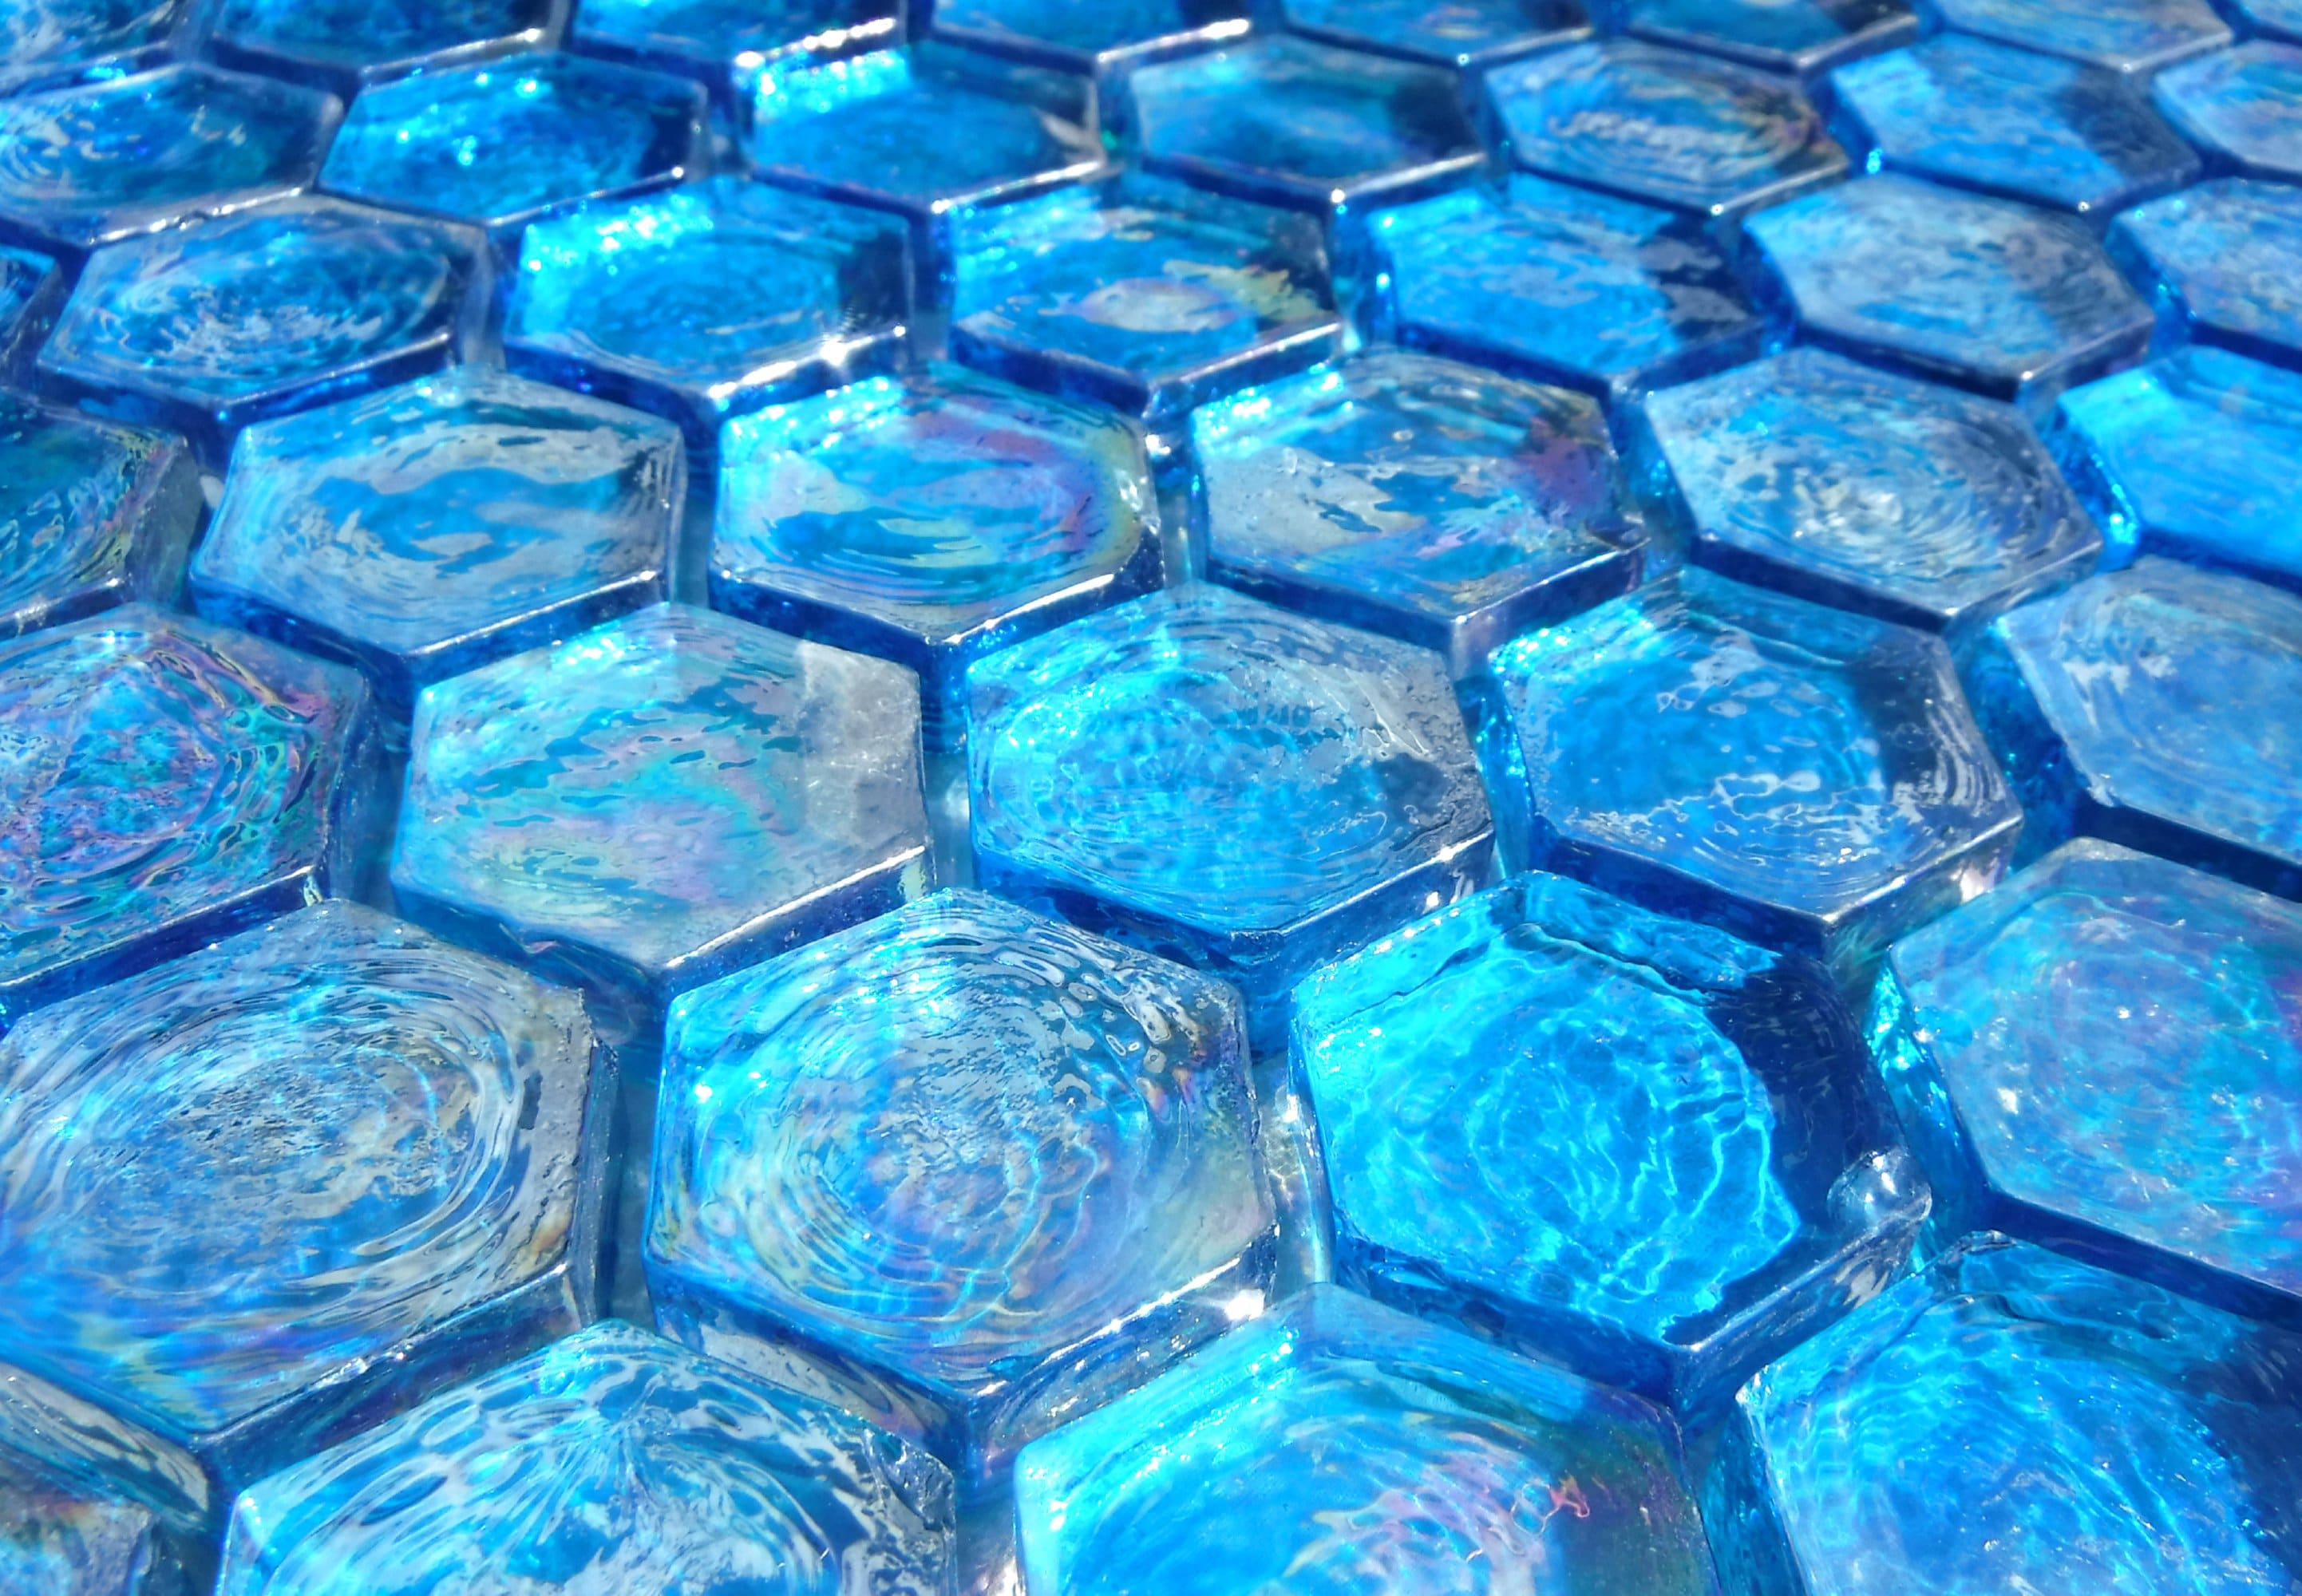 Blue Hexagon Mosaic Tiles - 25 Glass 1 Inch Iridescent Tiles